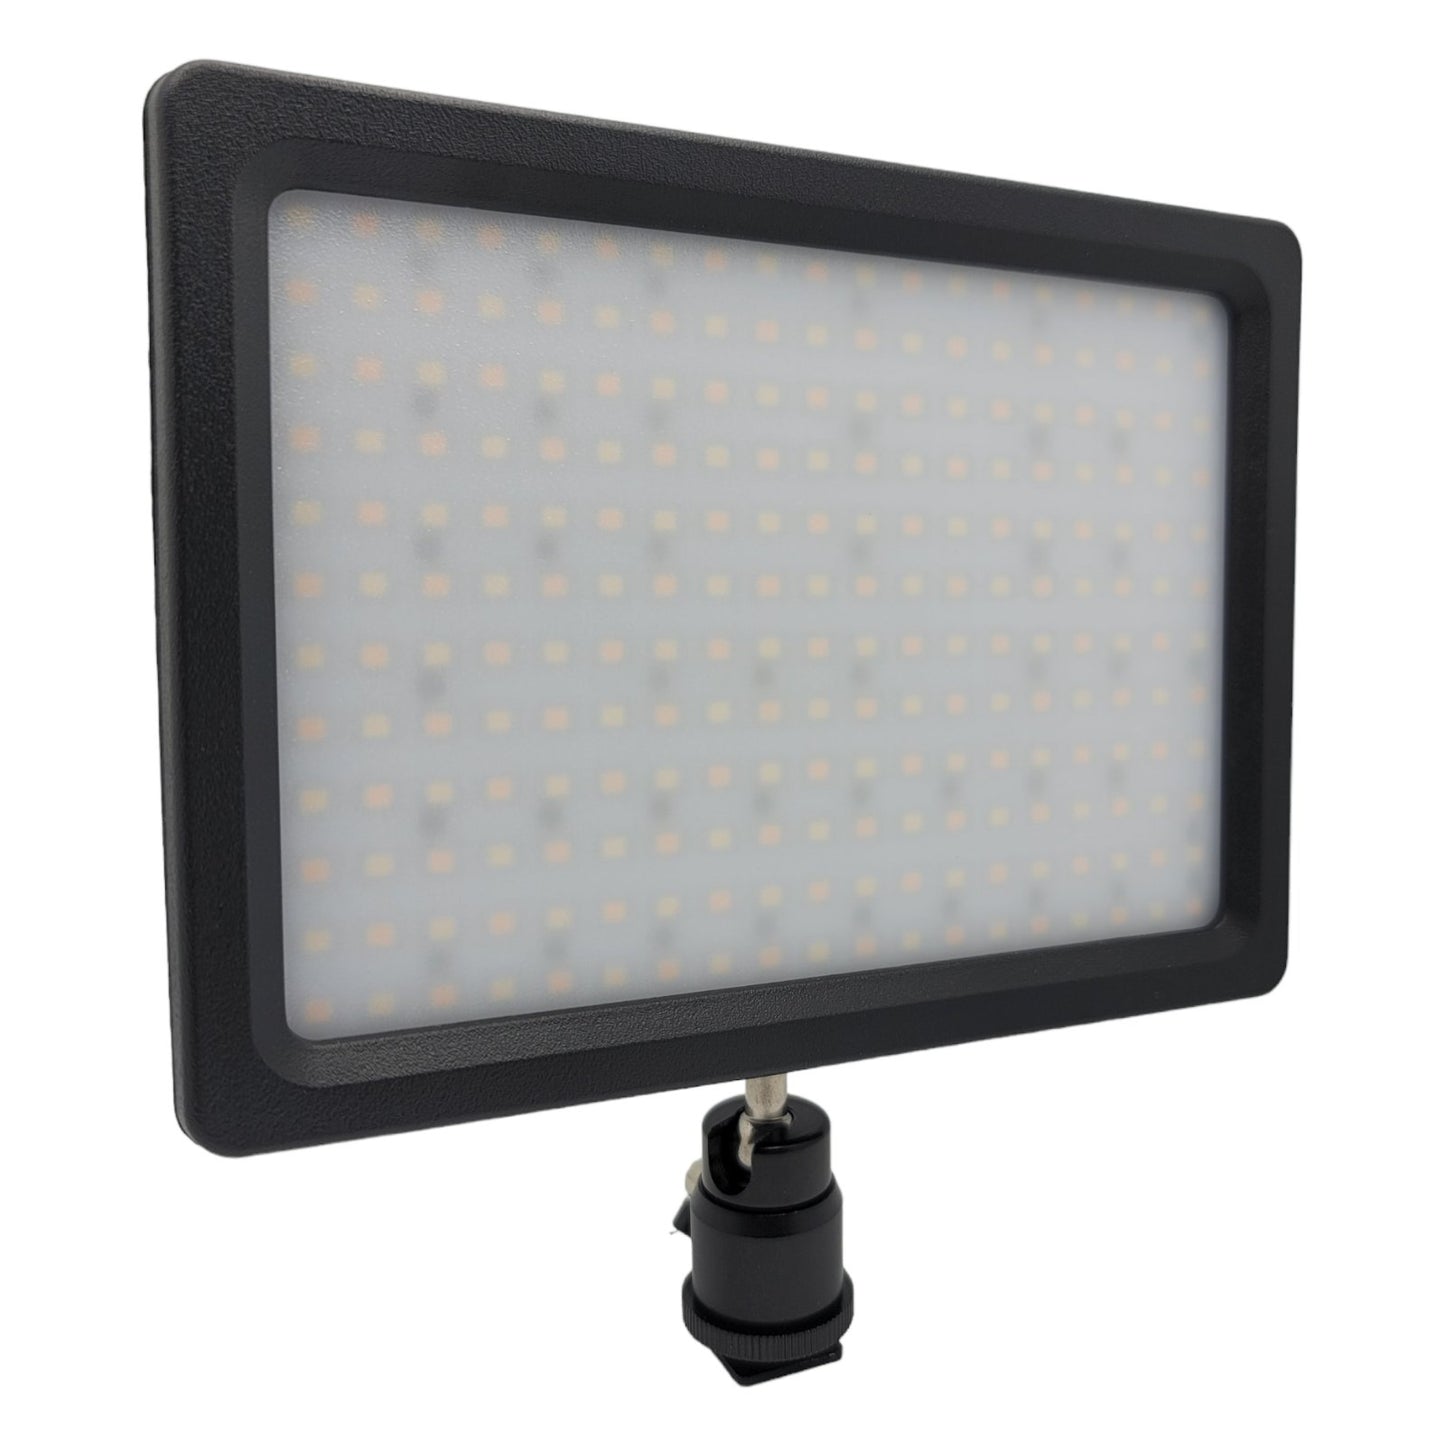 HRIDZ 112 LED Light Pad Bi-Colour 3200-5600K Video light